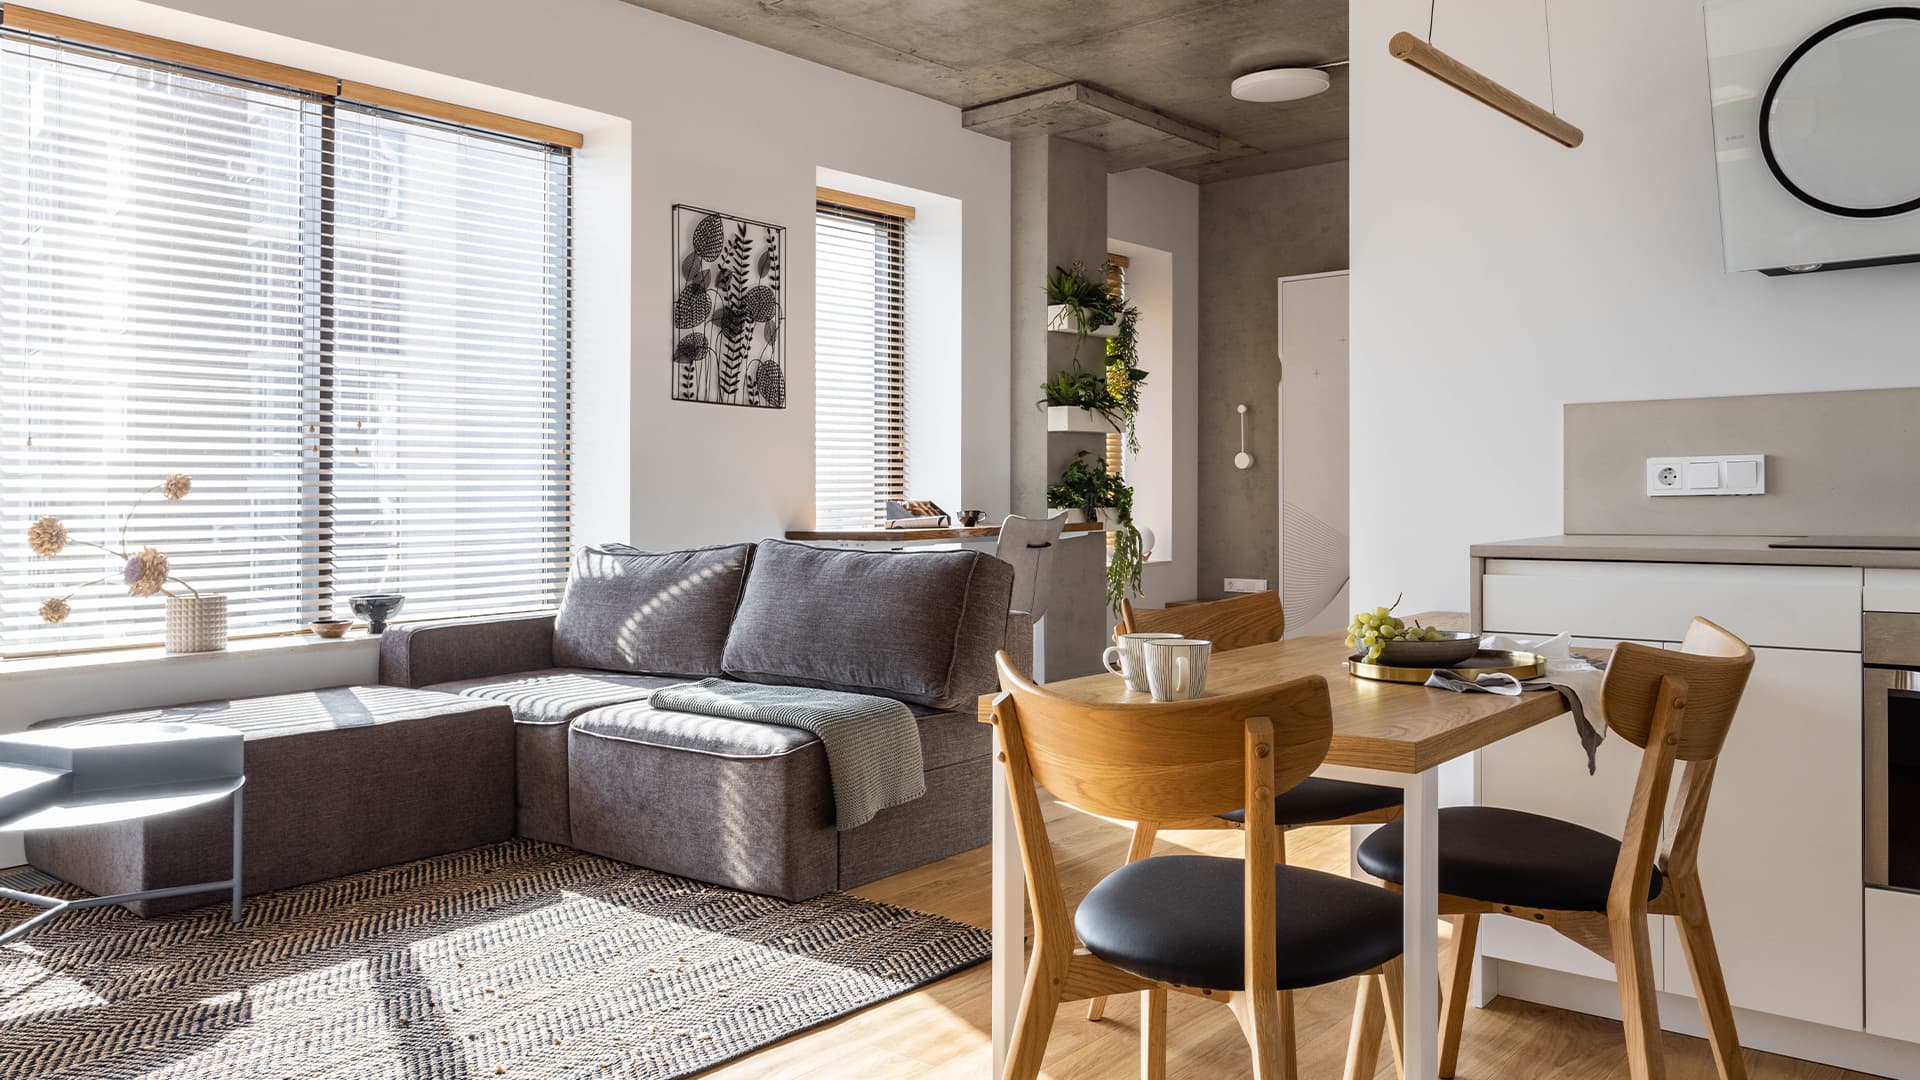 Продуманный интерьер небольшой квартиры с кроватью-трансформером — проект дизайн-бюро Dash Design